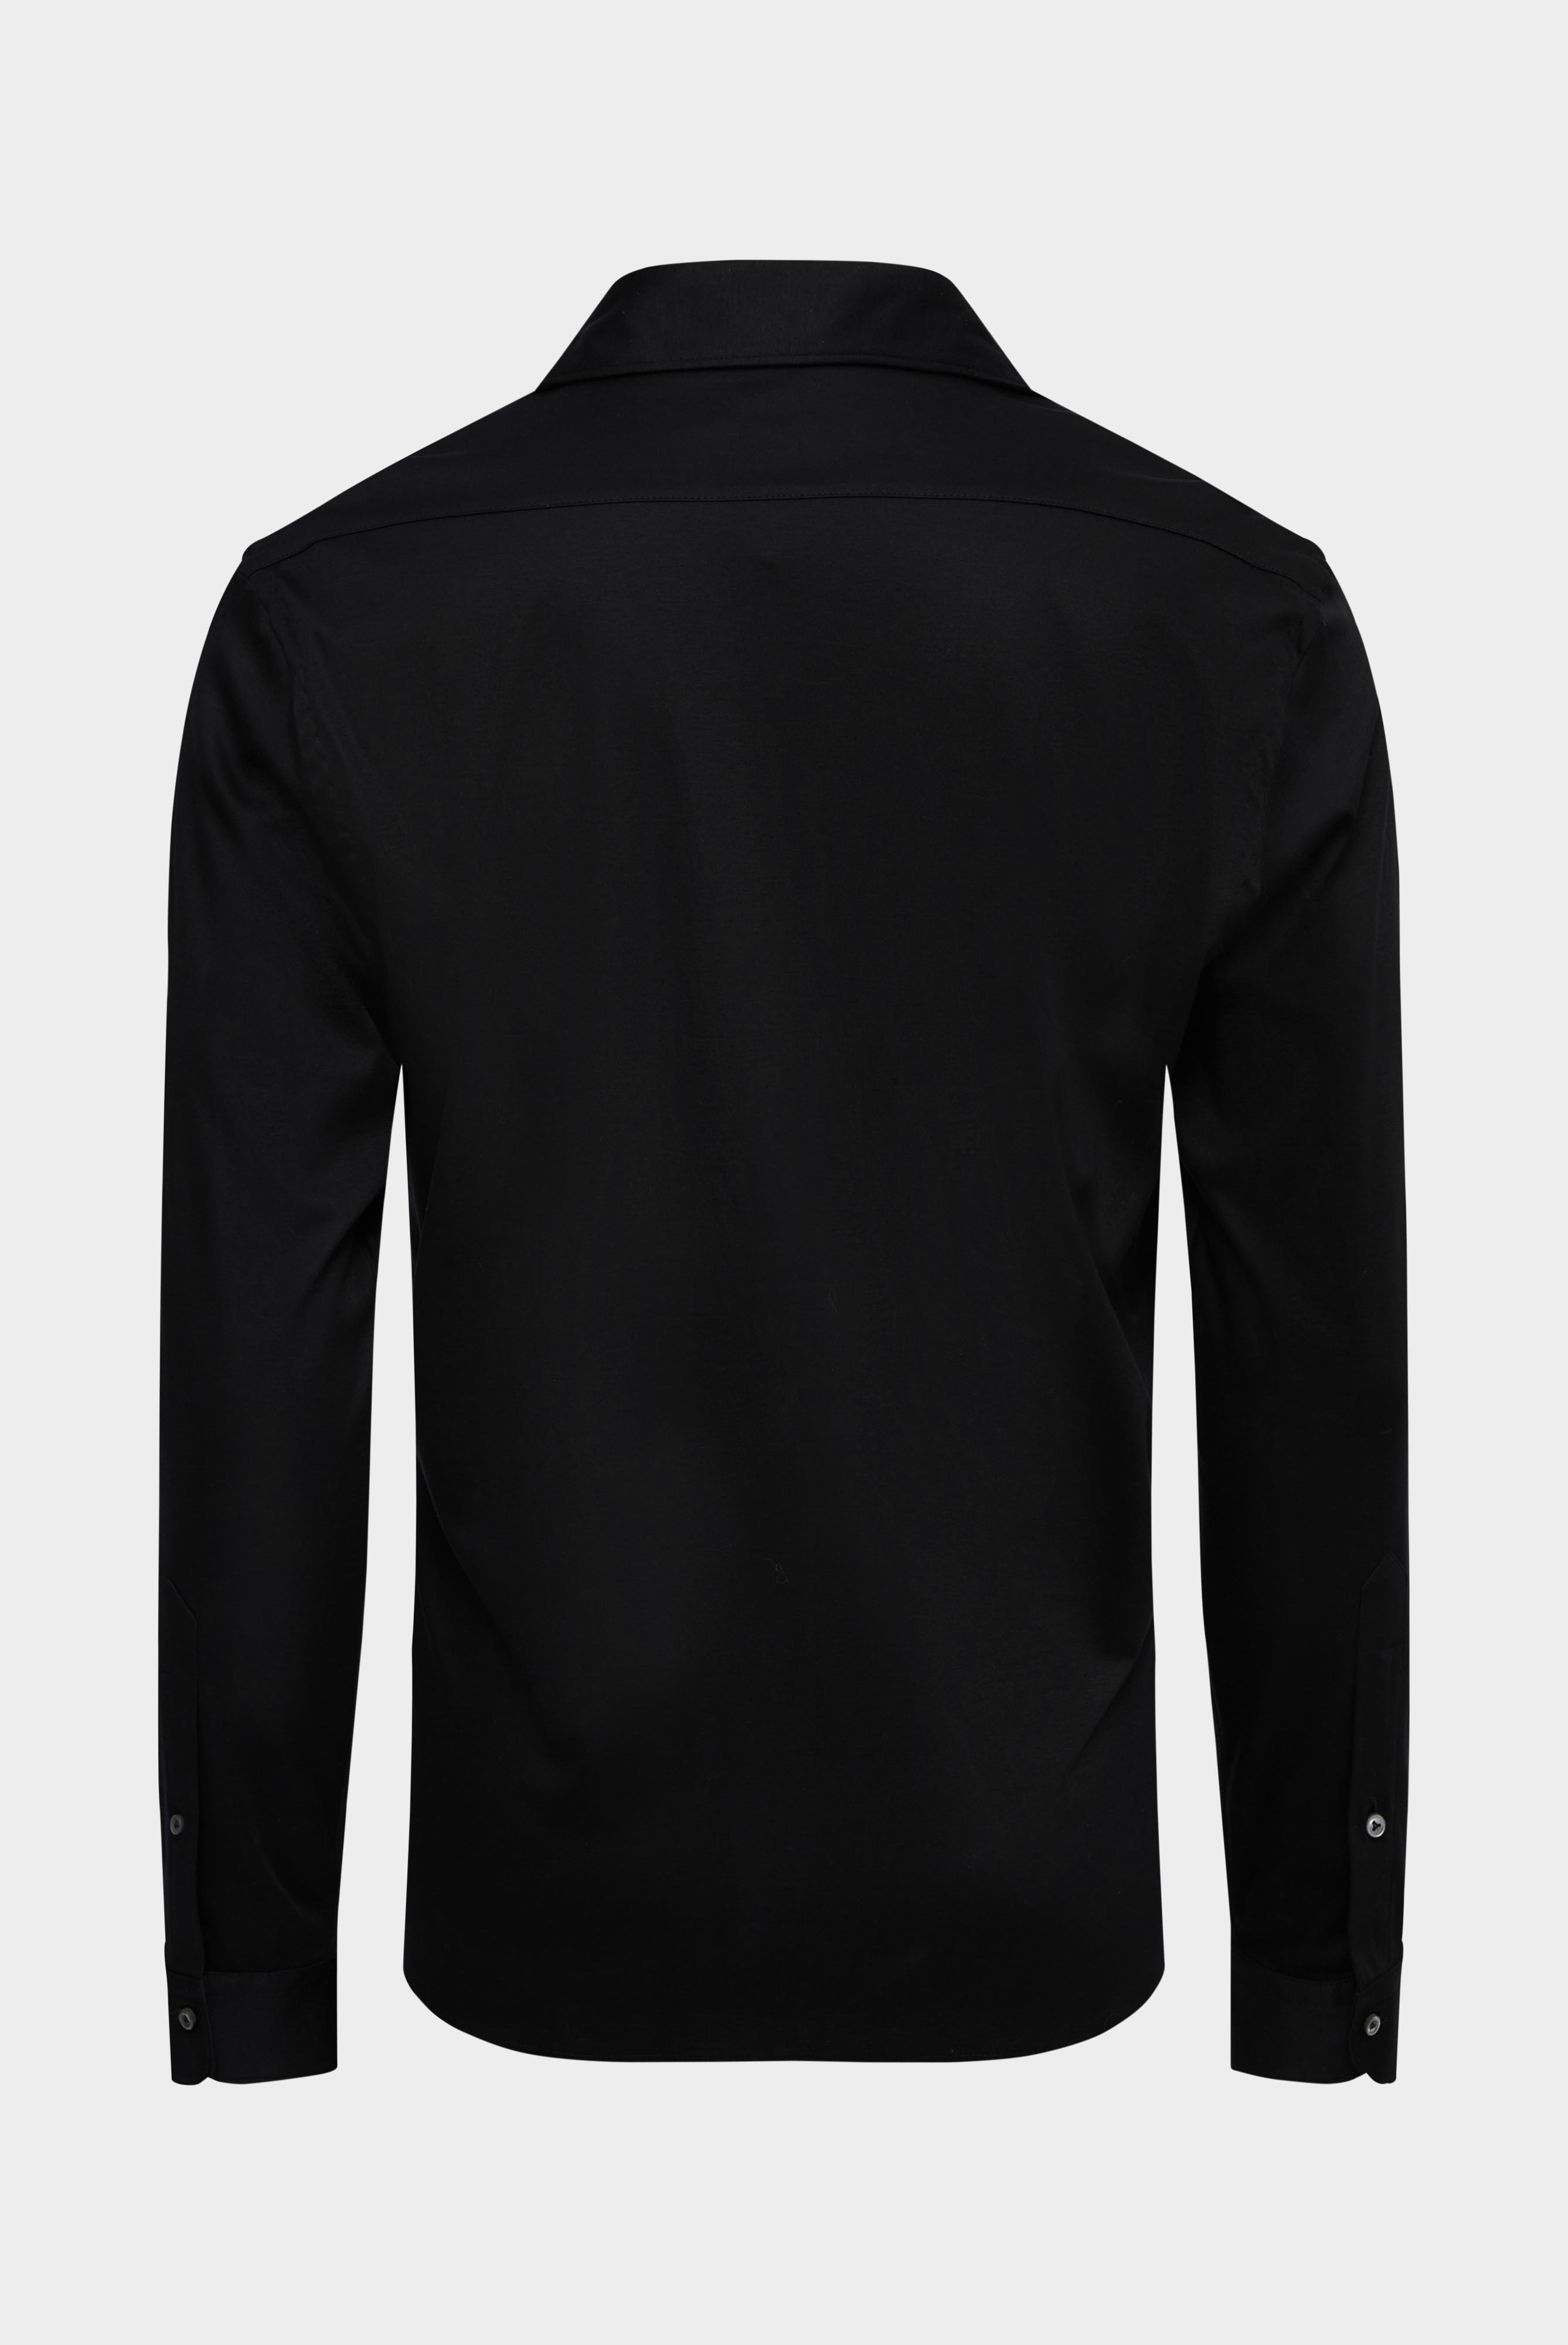 Bügelleichte Hemden+Jersey Hemd mit glänzender Optik Tailor Fit+20.1683.UC.180031.099.L